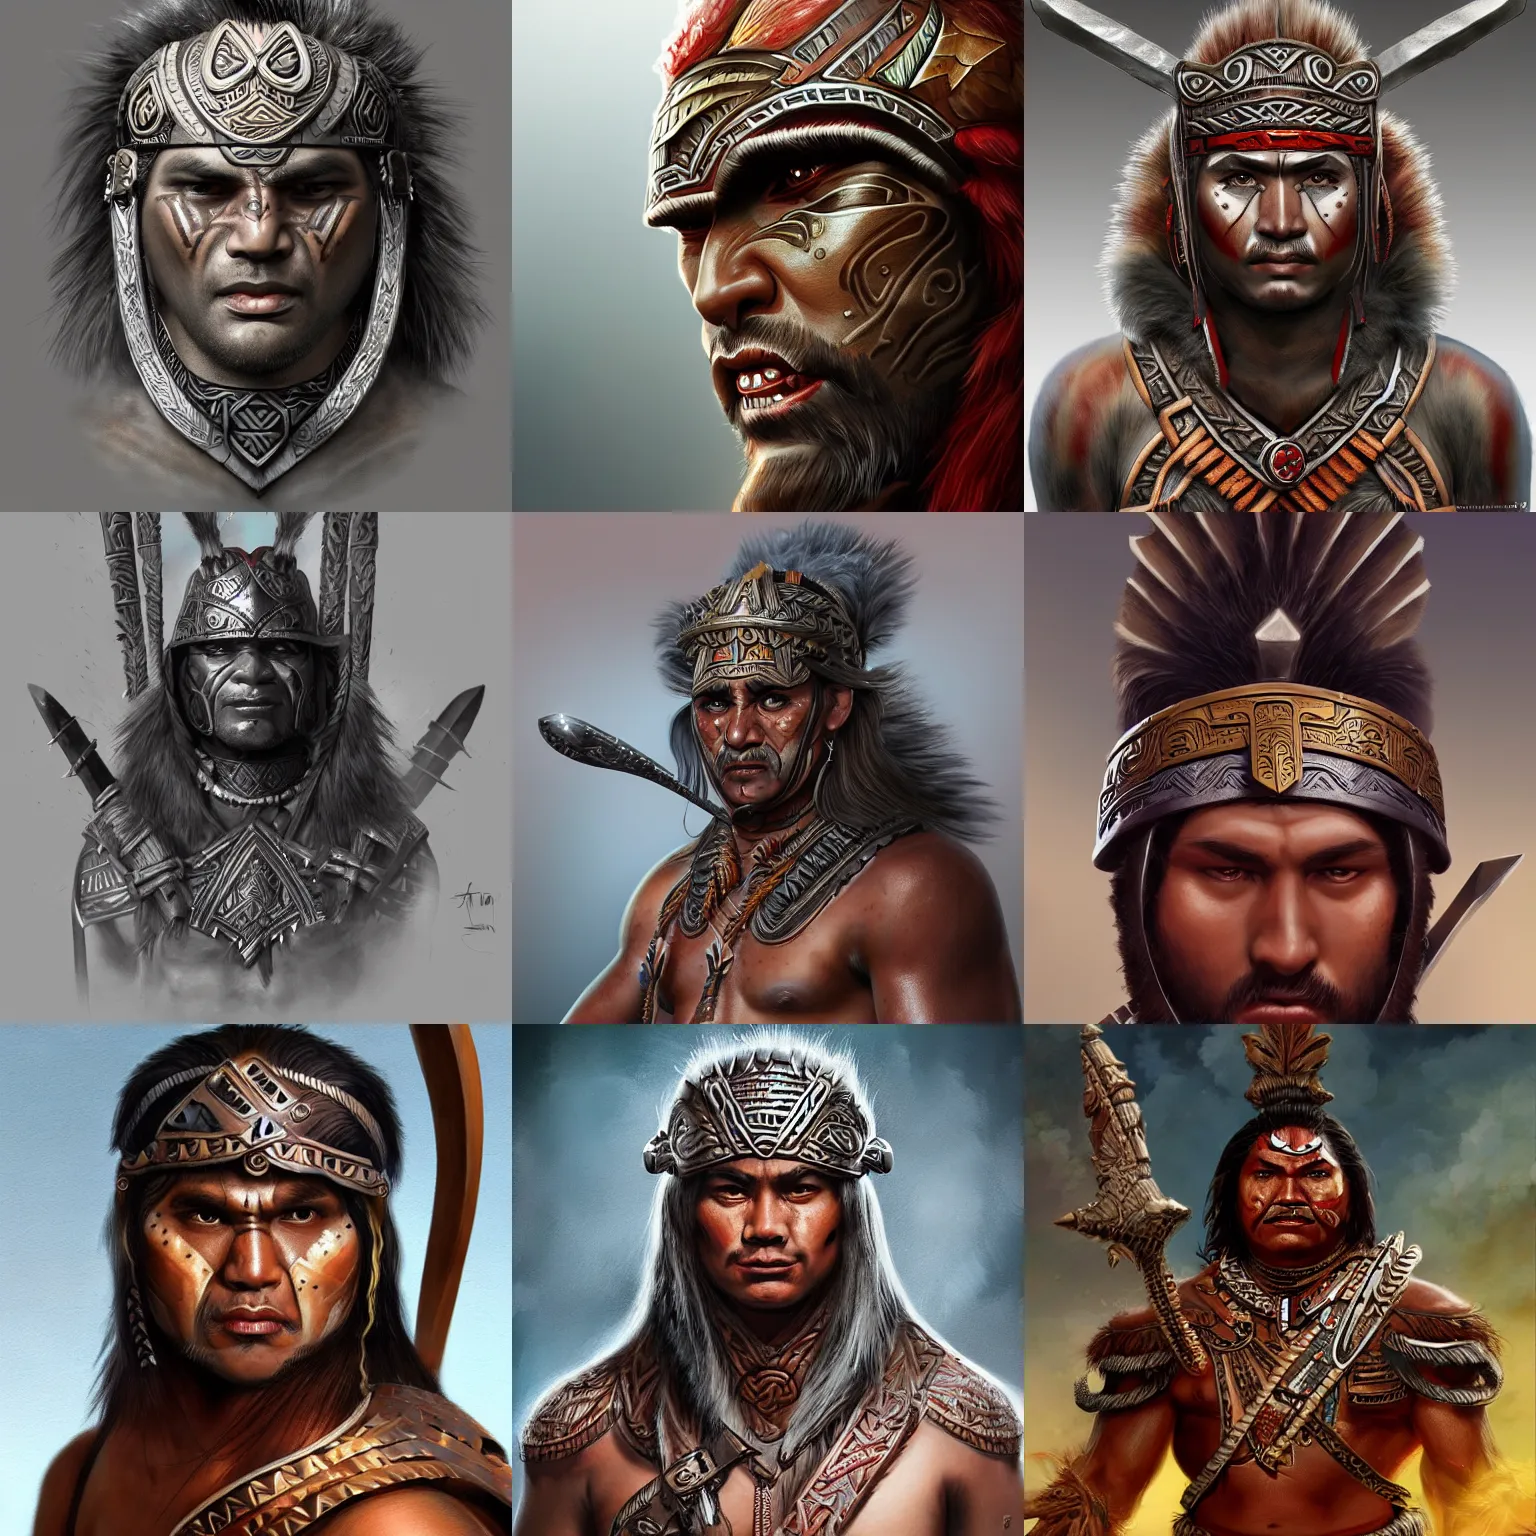 Prompt: maori warrior, artstation, digital art, concept art, fantasy, artstation, highly detailed, sharp focus